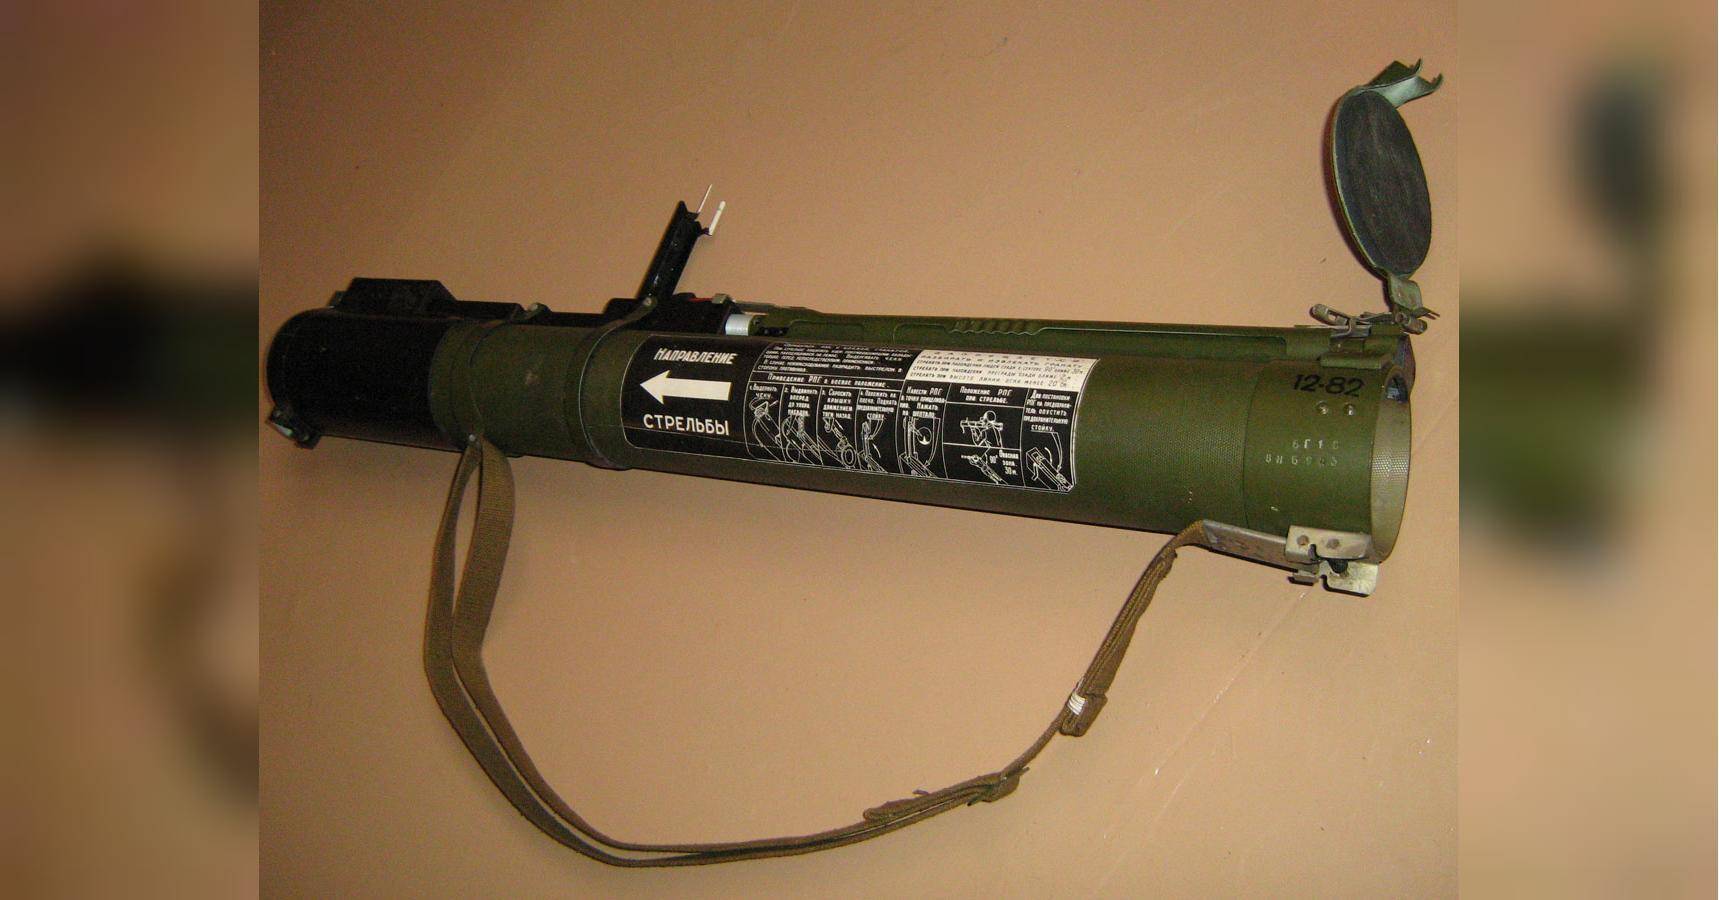 Гранатомет муха рпг-18, ручной противотанковый, характеристики ттх, описание переносного одноразового оружия с фото